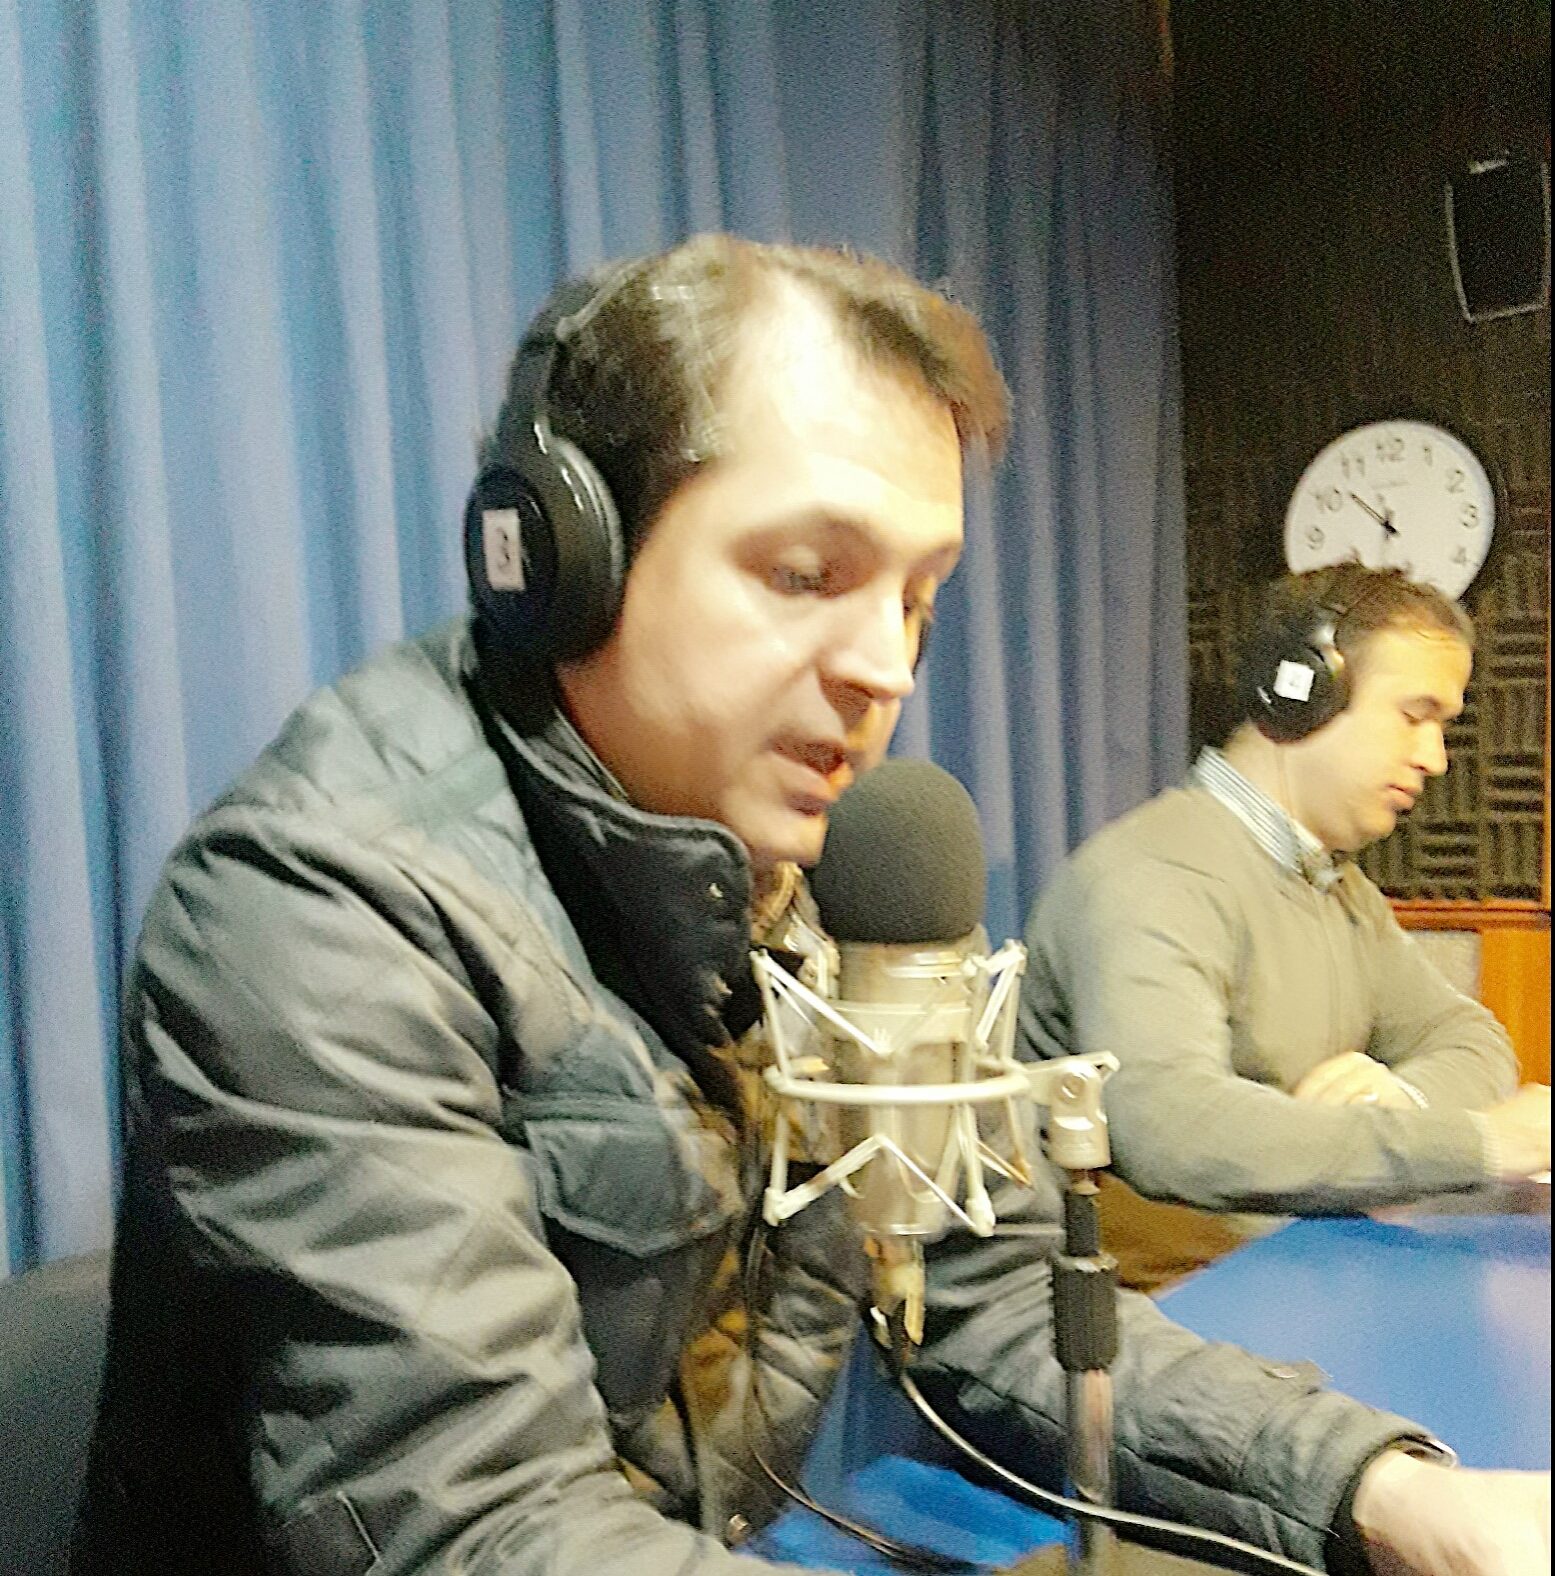 Doctor Esteban Torres en Radio Bío Bío conversando sobre Fundación Mujer 2.0, Dr. Esteban Torres